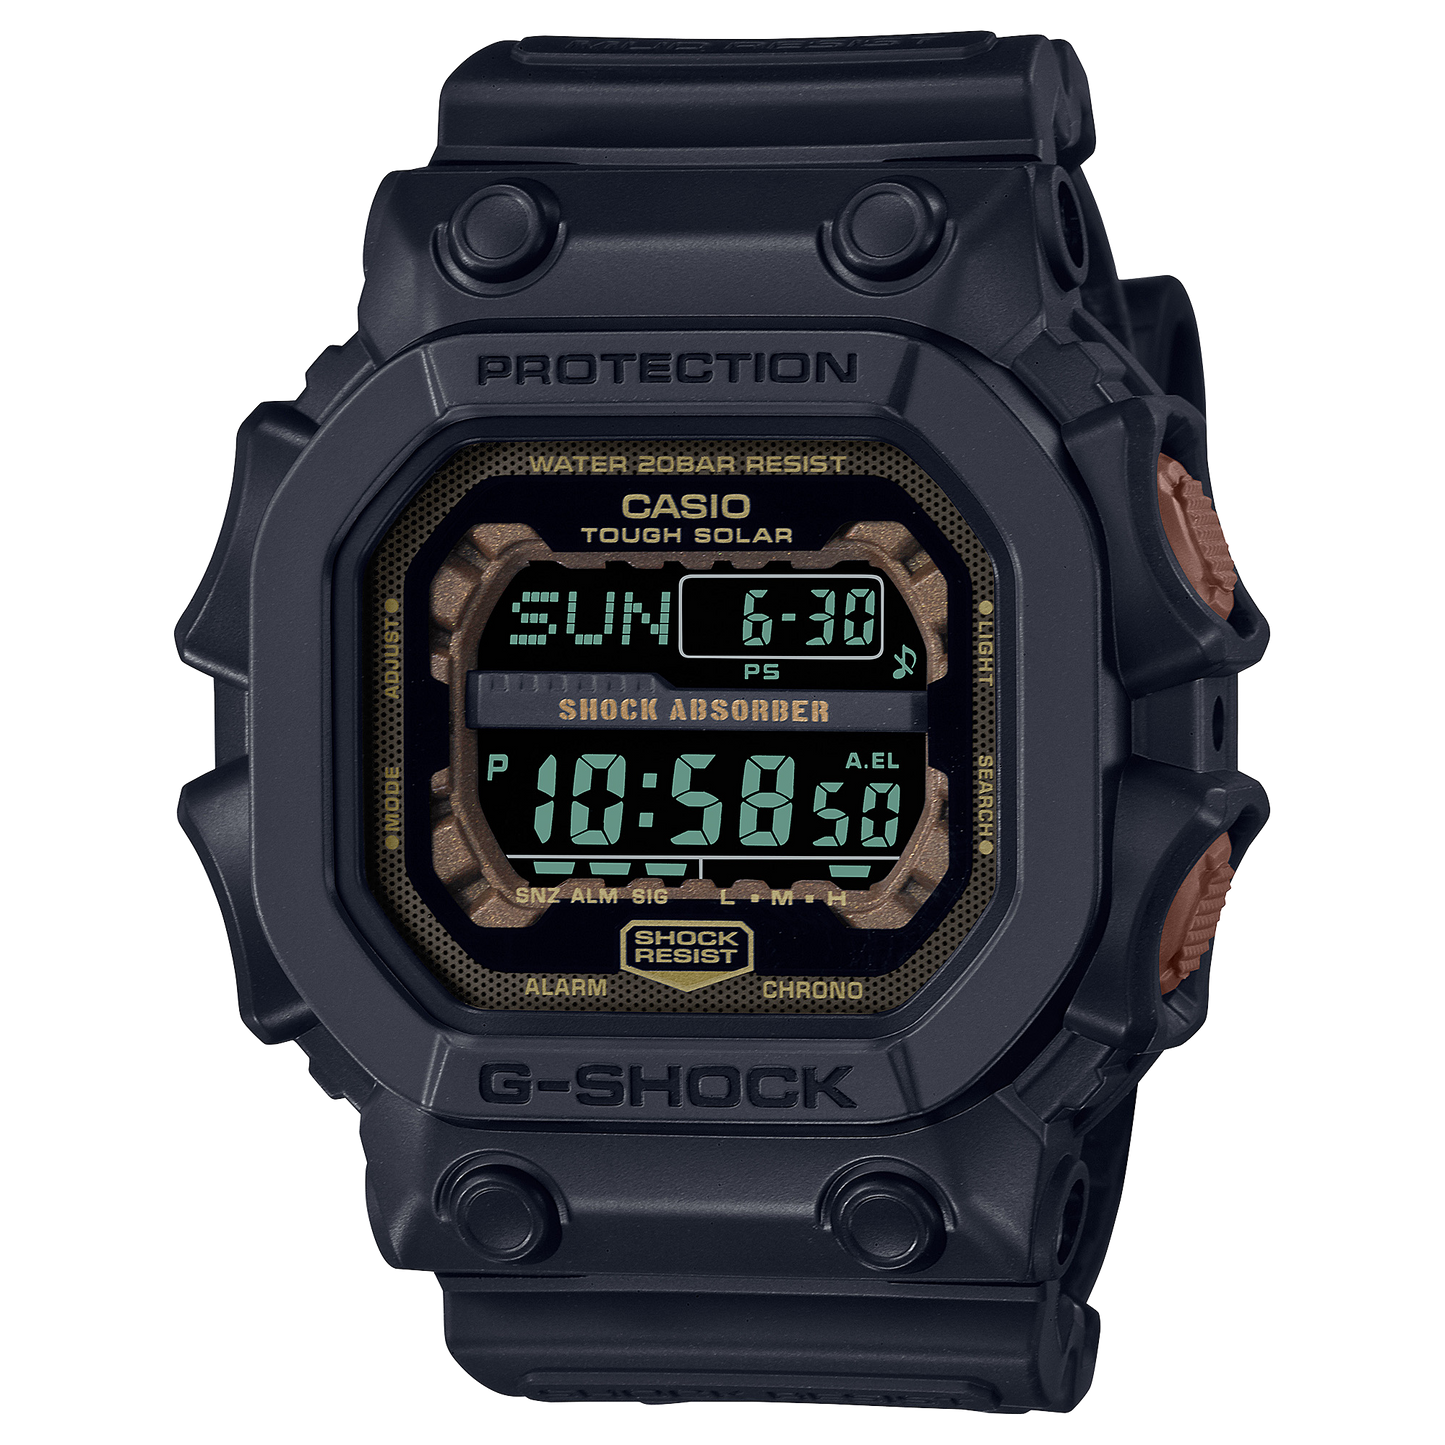 Casio G-Shock GX-56RC-1DR Digital Men's Watch Black